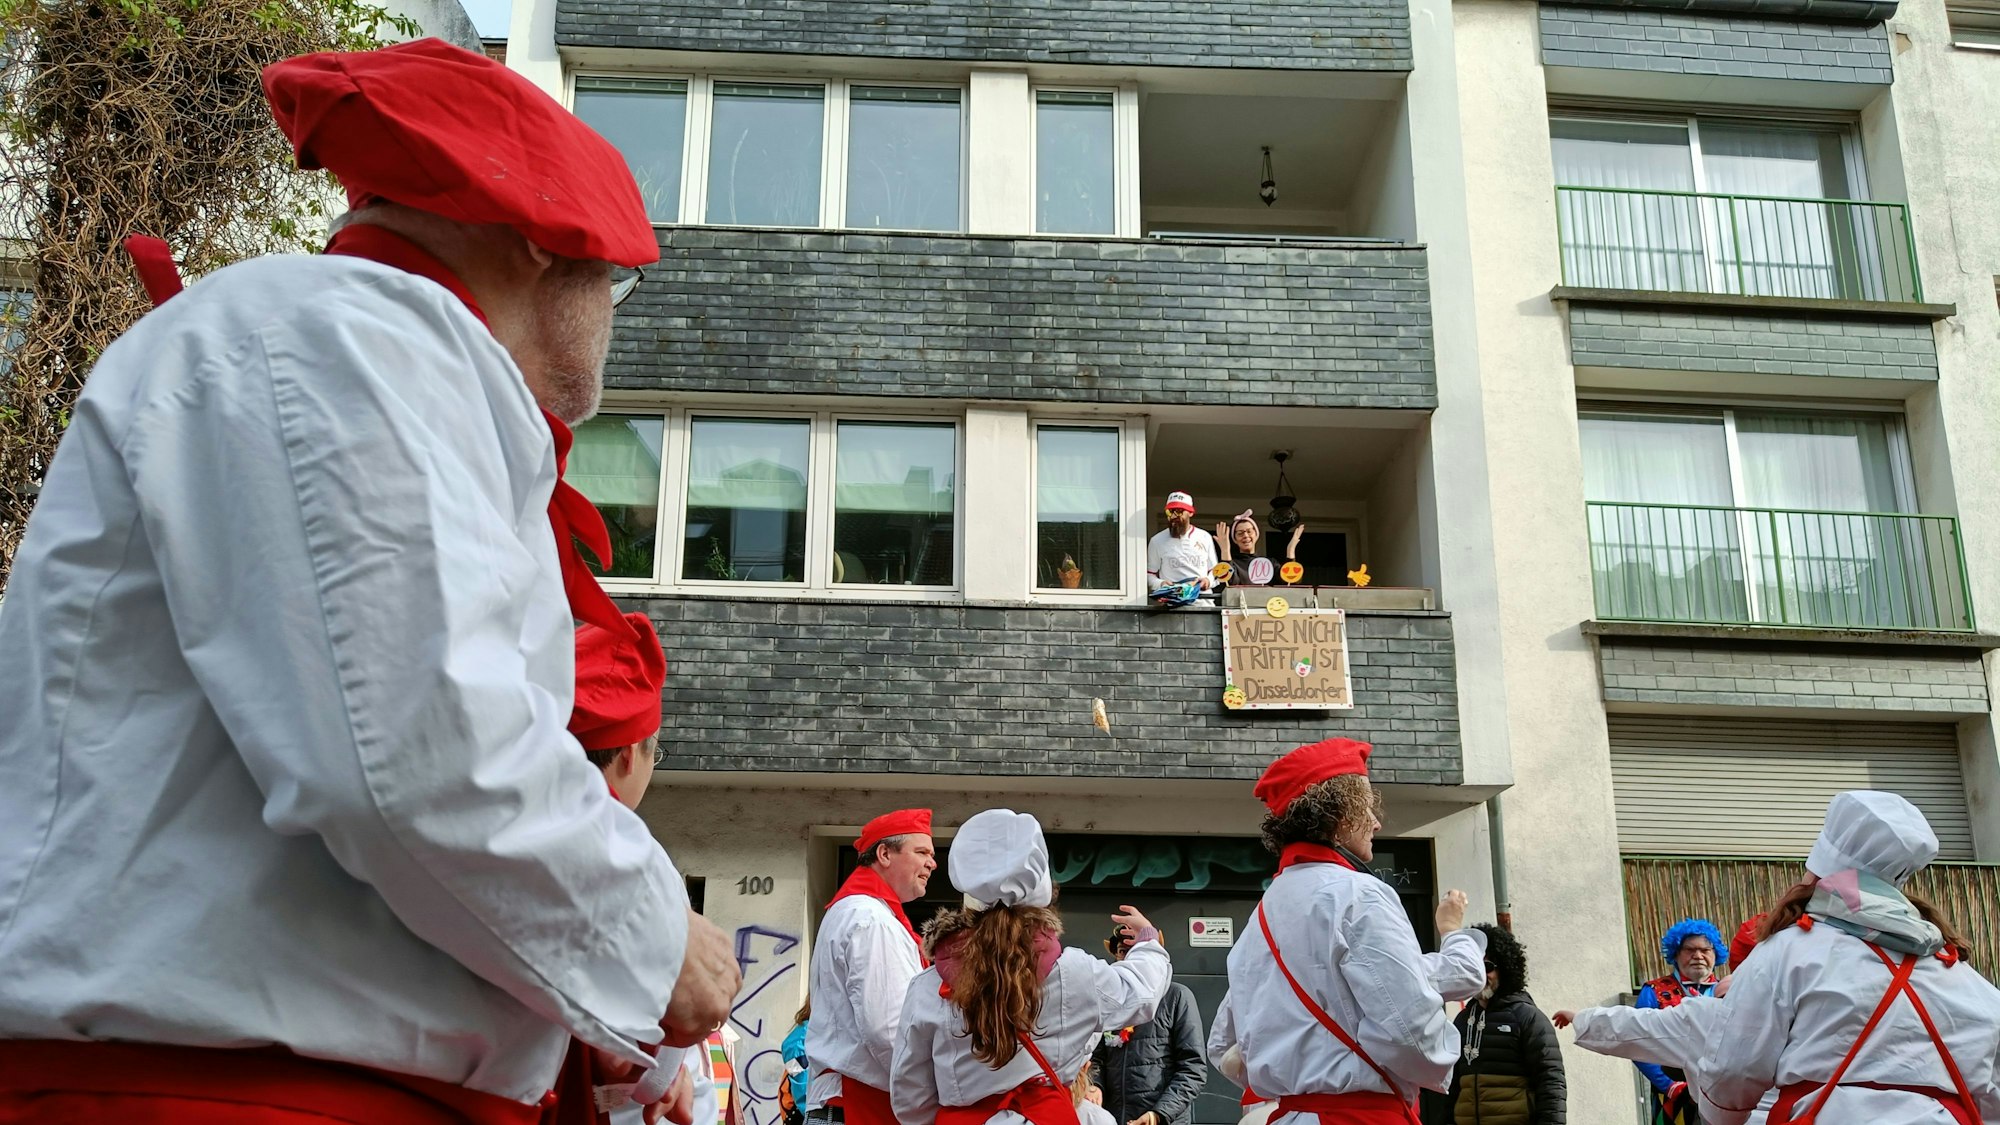 Im Vordergrund ist eine Gruppe in Koch-Kostümen zu sehen. Von einem Balkon hängt ein Pappschild herunter.